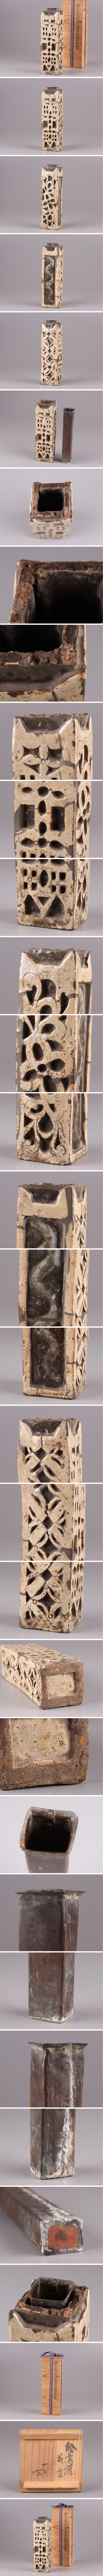 純日本製古美術 朝鮮古陶磁器 高麗 花彫紋様 花器 時代物 極上品 初だし品 3608 高麗